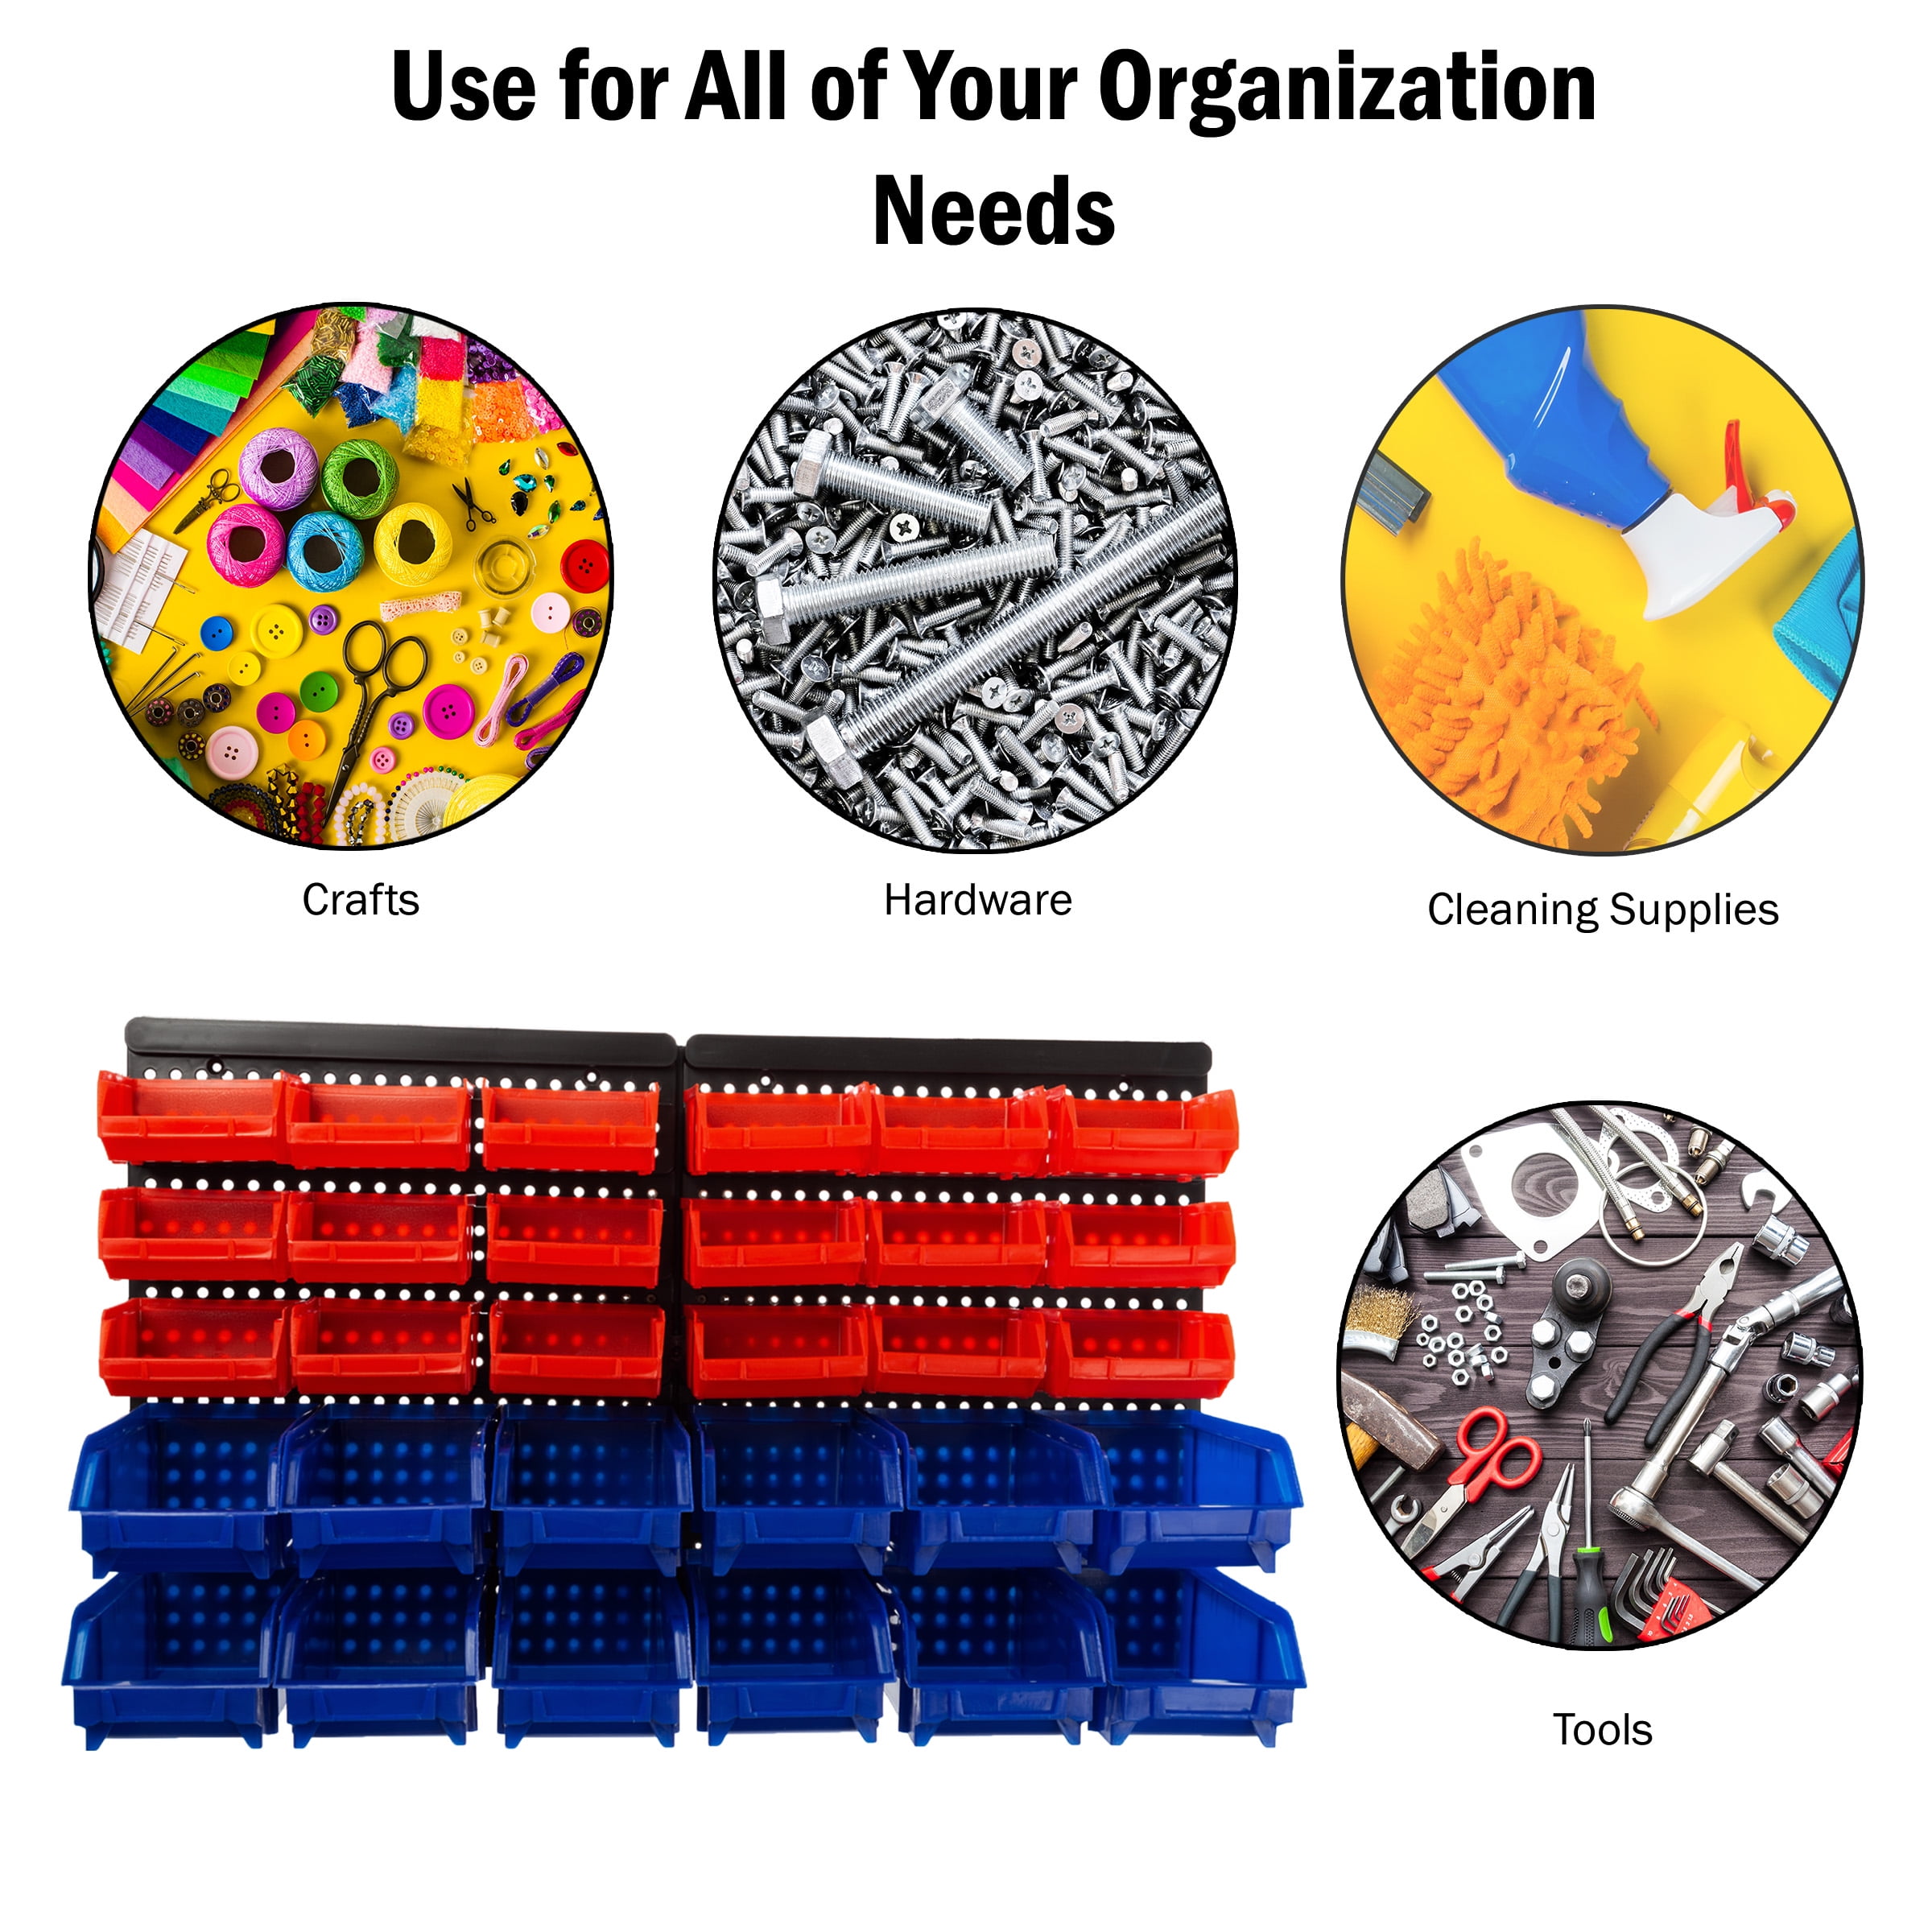 Garage Storage Bins - 30-Compartment Garage Organization, Craft Storage,  Tool Box Organizer Unit (/Red/Blue) by car accessories - AliExpress